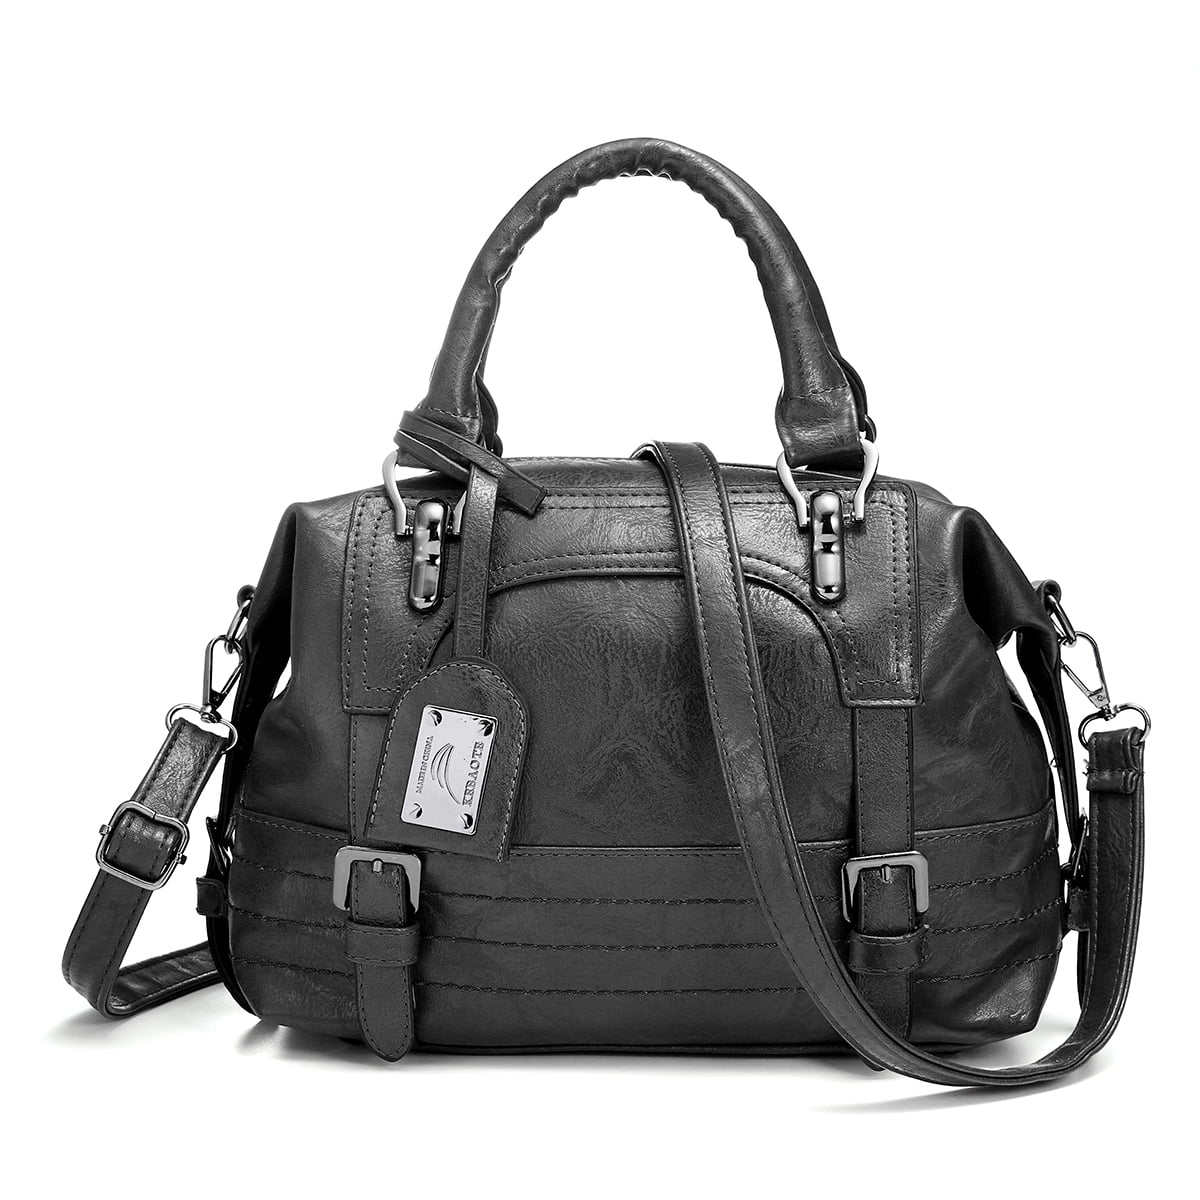 2020 Women Lady Leather Handbag Tote Messenger CrossBody Shoulder Bag ...